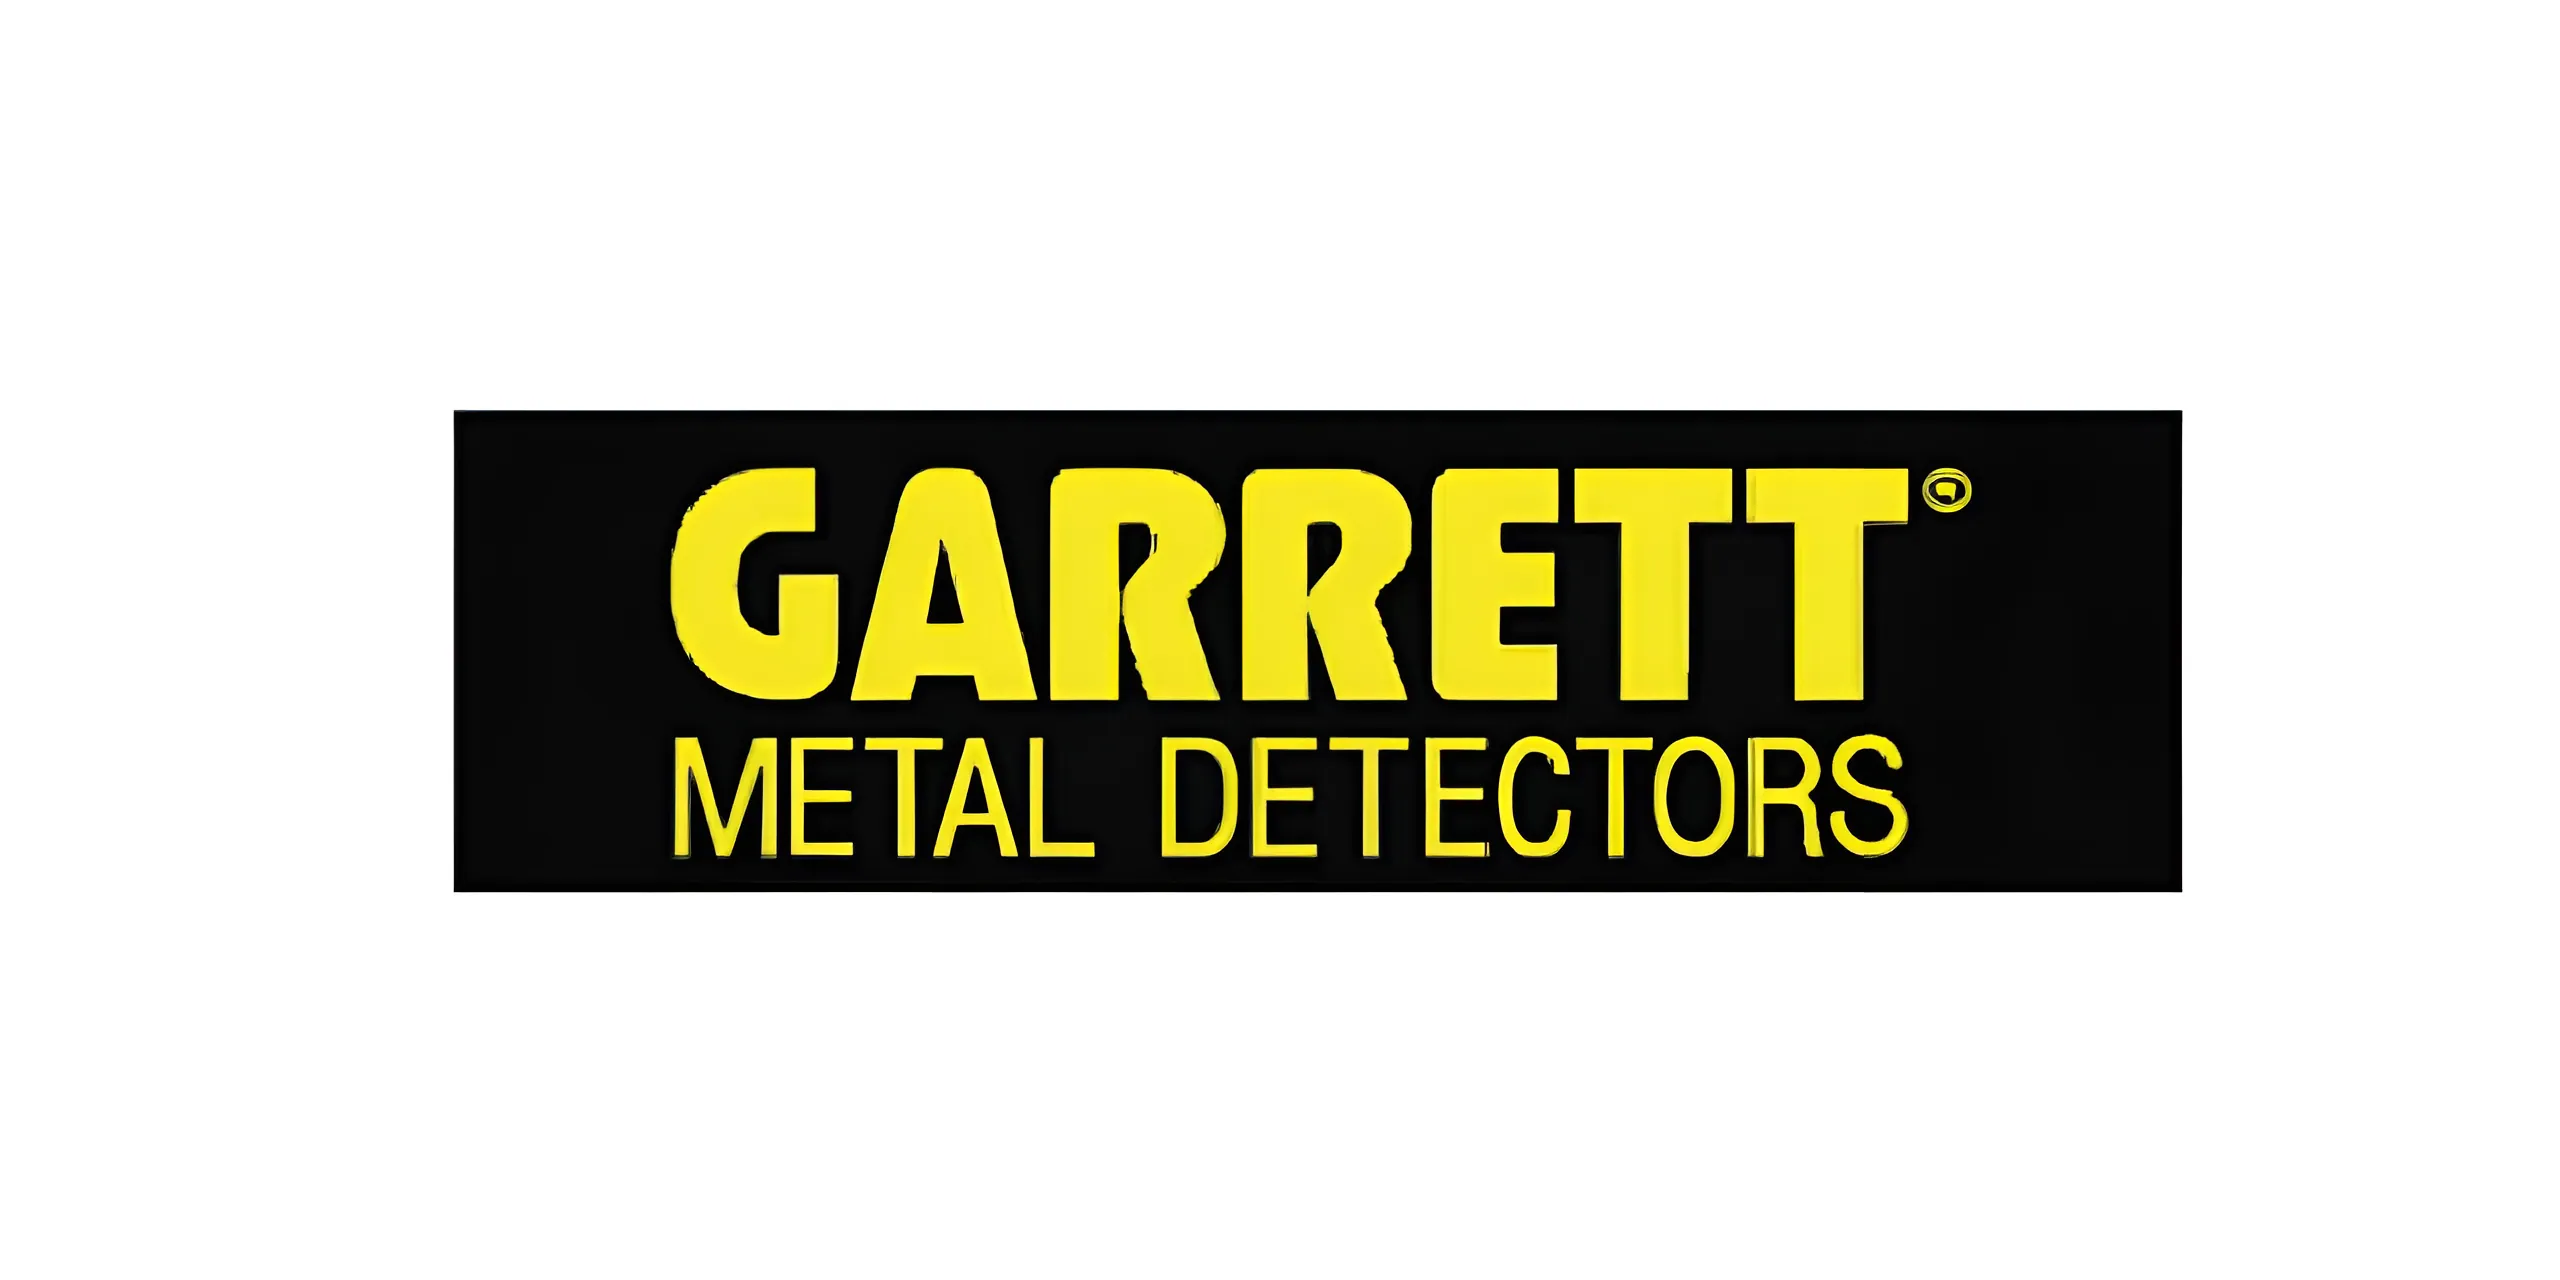 GARRETT Metal Detectors Company's LOGO